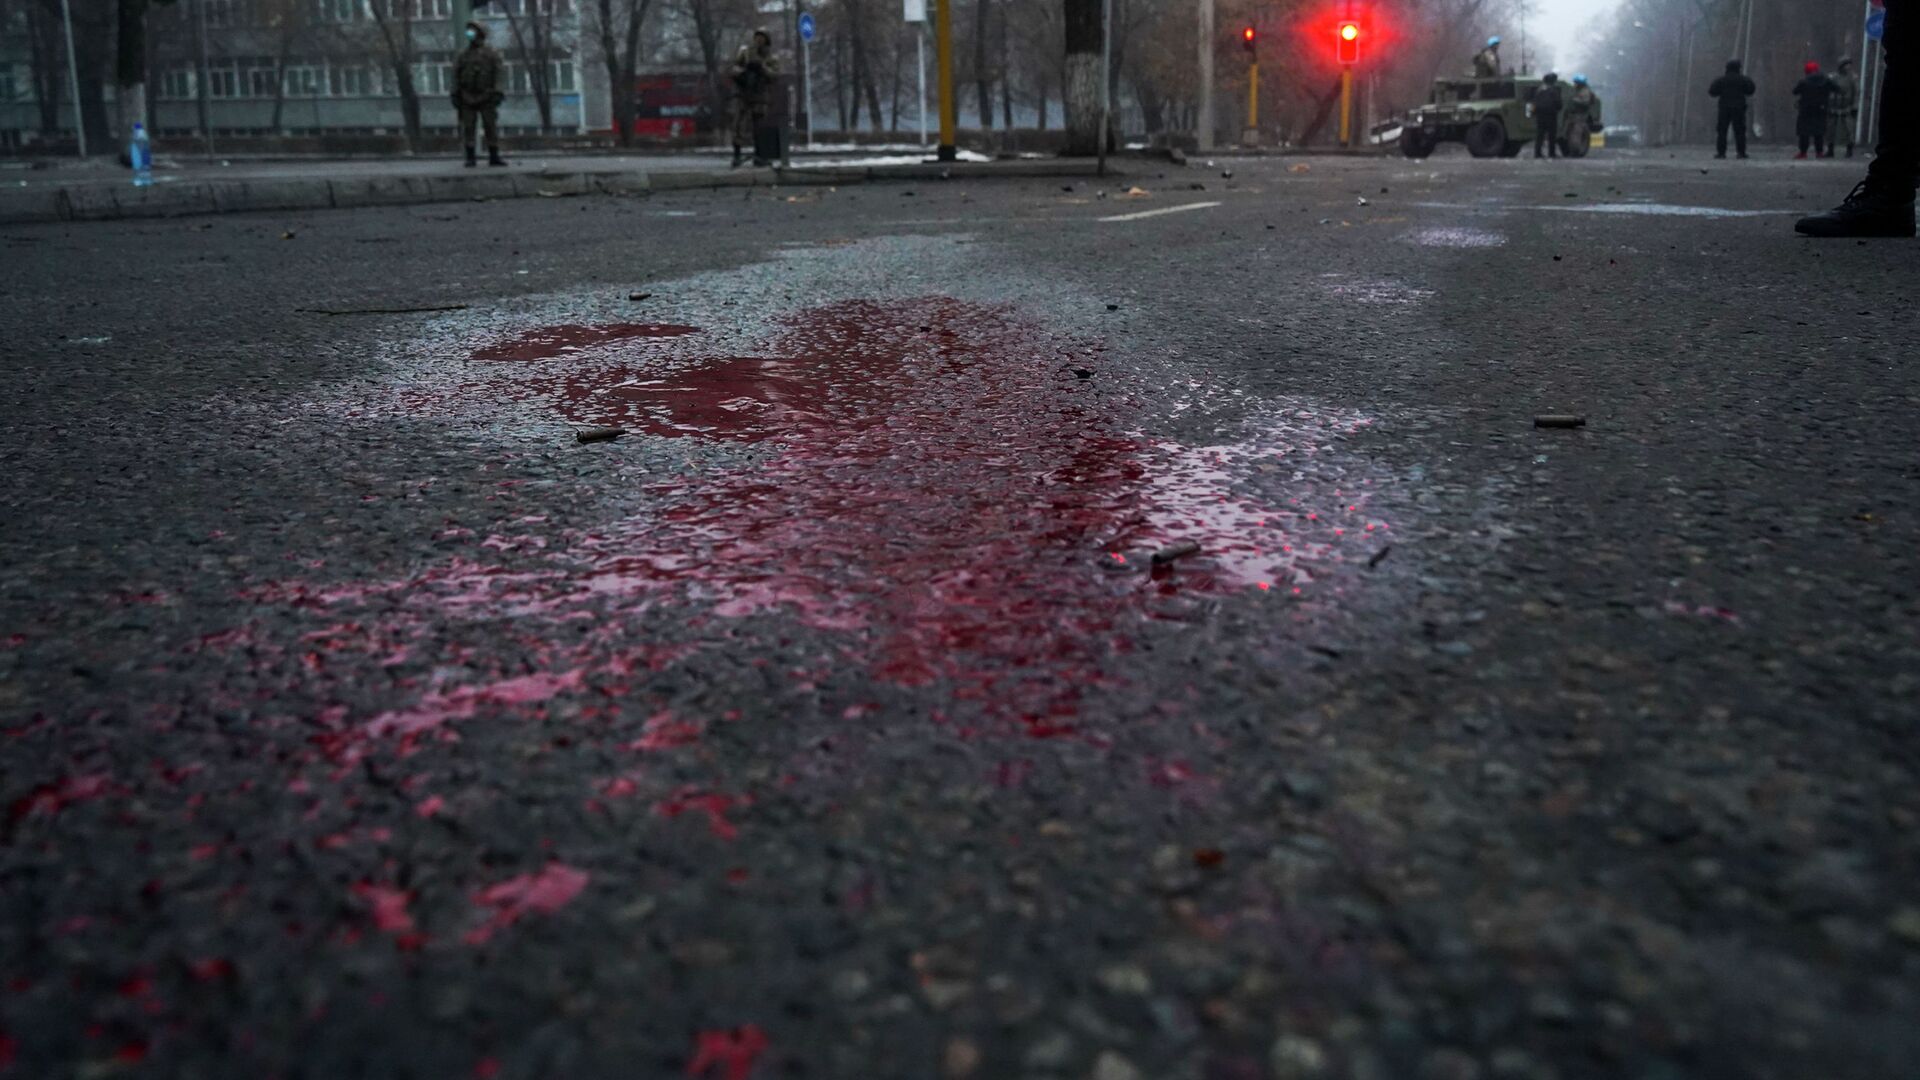 Кровь видна на дороге, когда казахстанские солдаты патрулируют улицу после столкновений в Алматы, Казахстан, четверг, 6 января 2022 г.  - Sputnik Казахстан, 1920, 13.02.2022